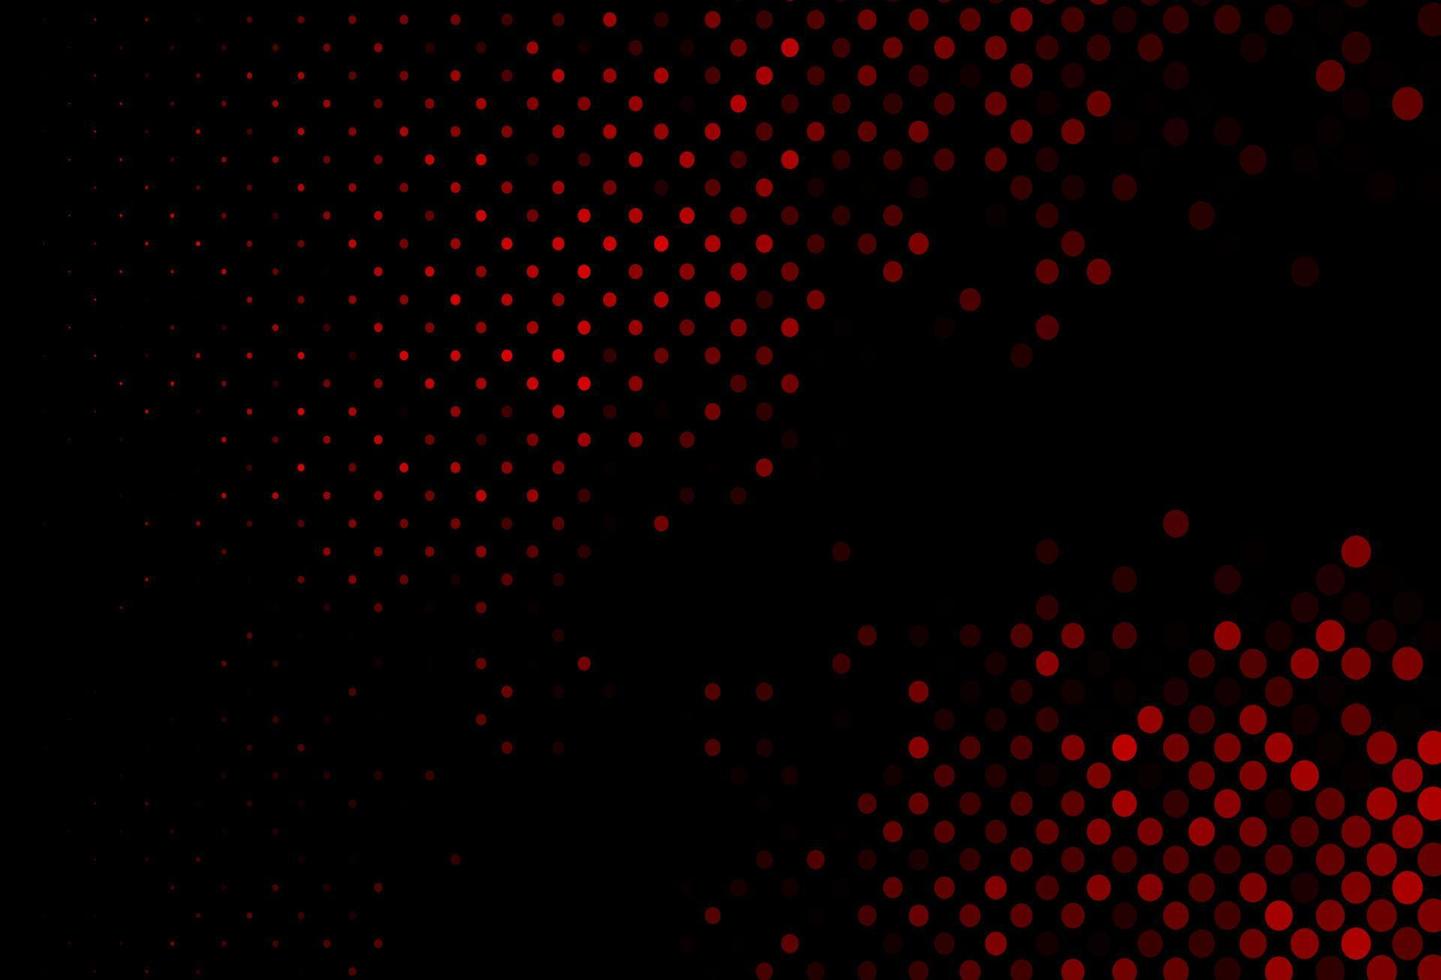 modelo de vetor vermelho escuro com círculos.